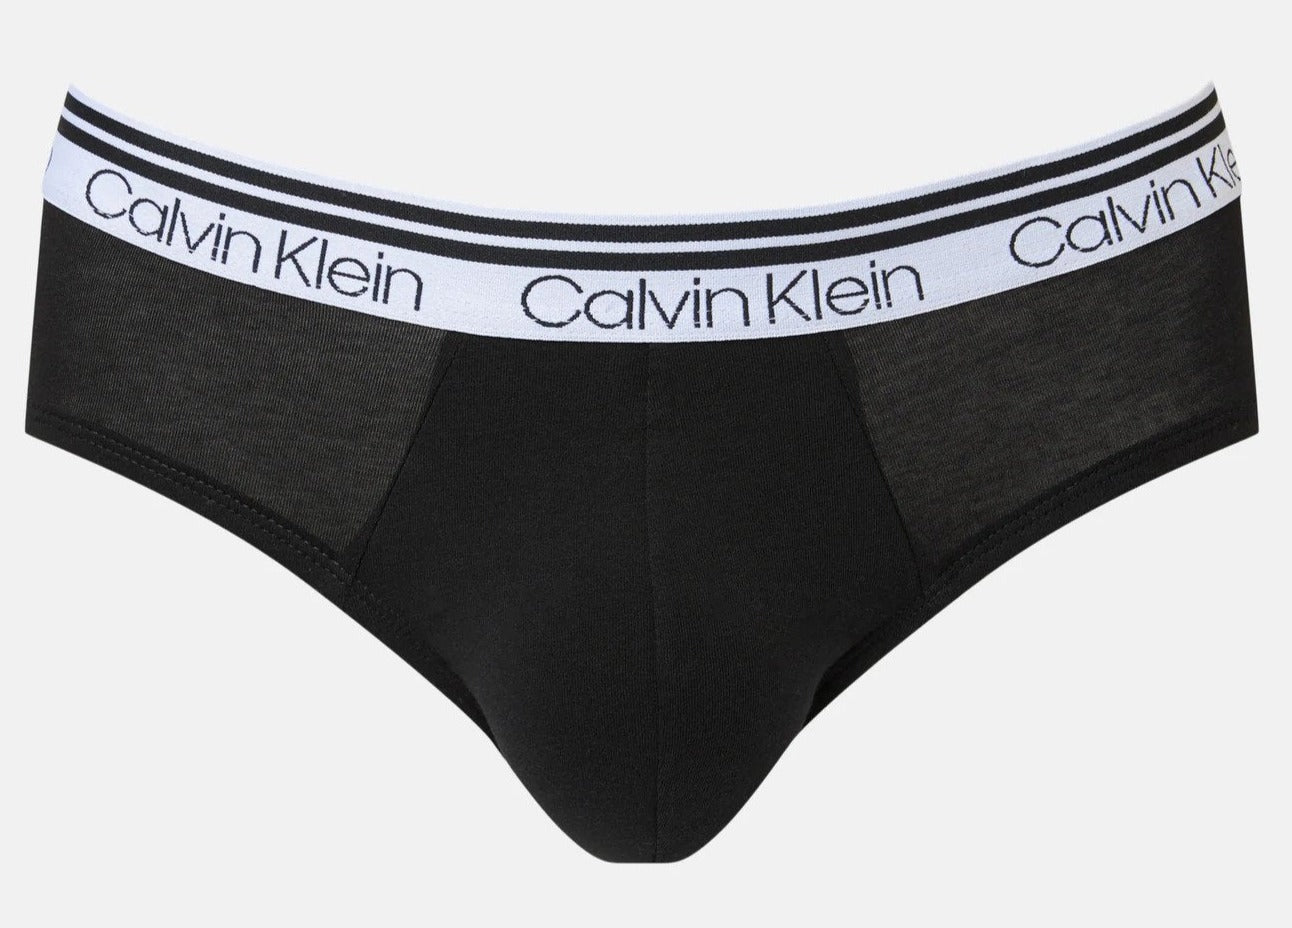 Calvin Klein Men's Modern Cotton Stretch Sports Briefs 3-Pack